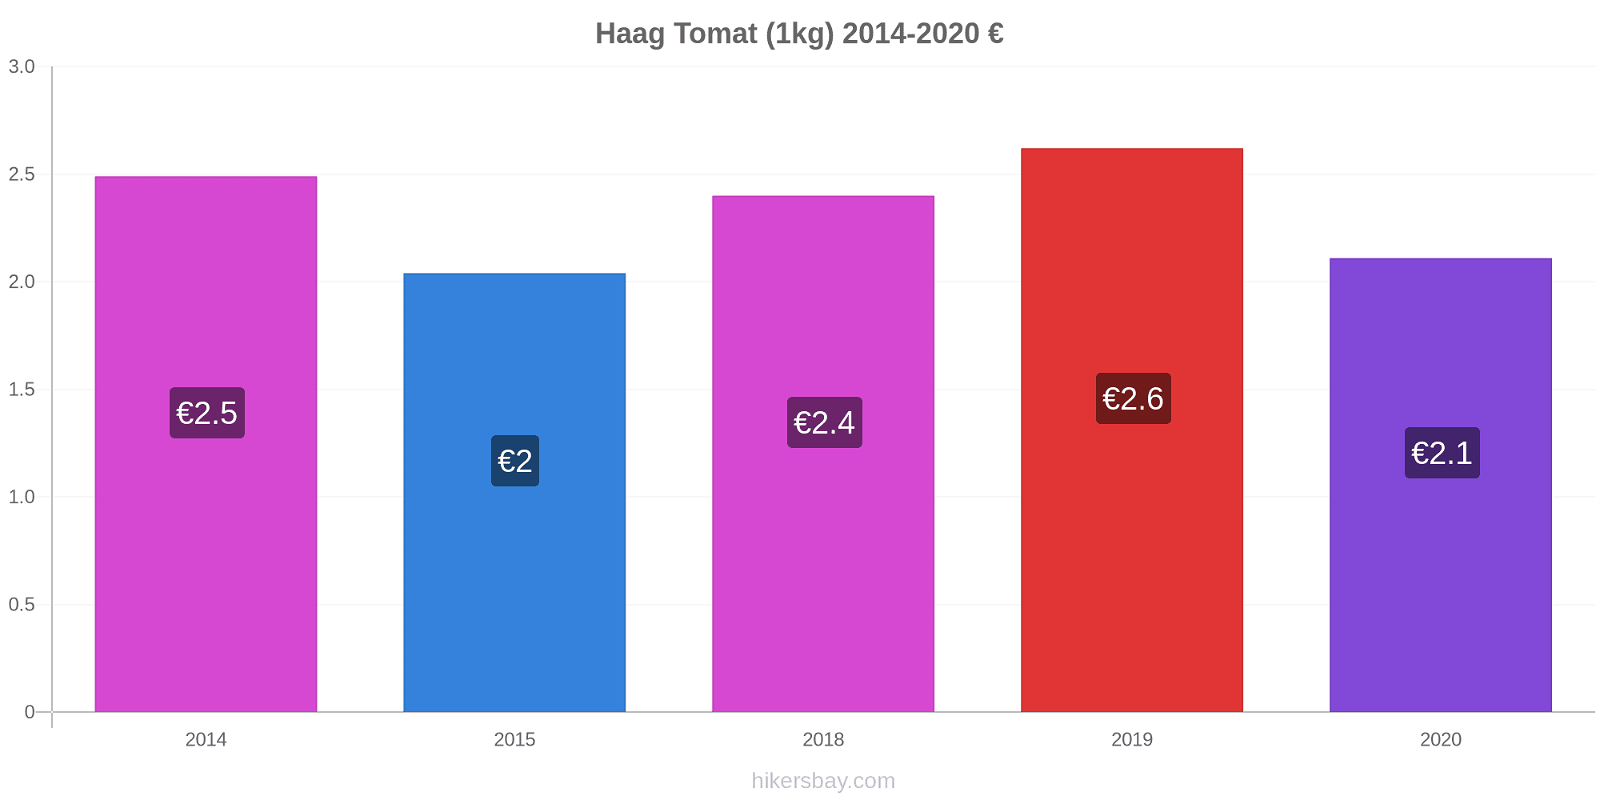 Haag prisændringer Tomat (1kg) hikersbay.com